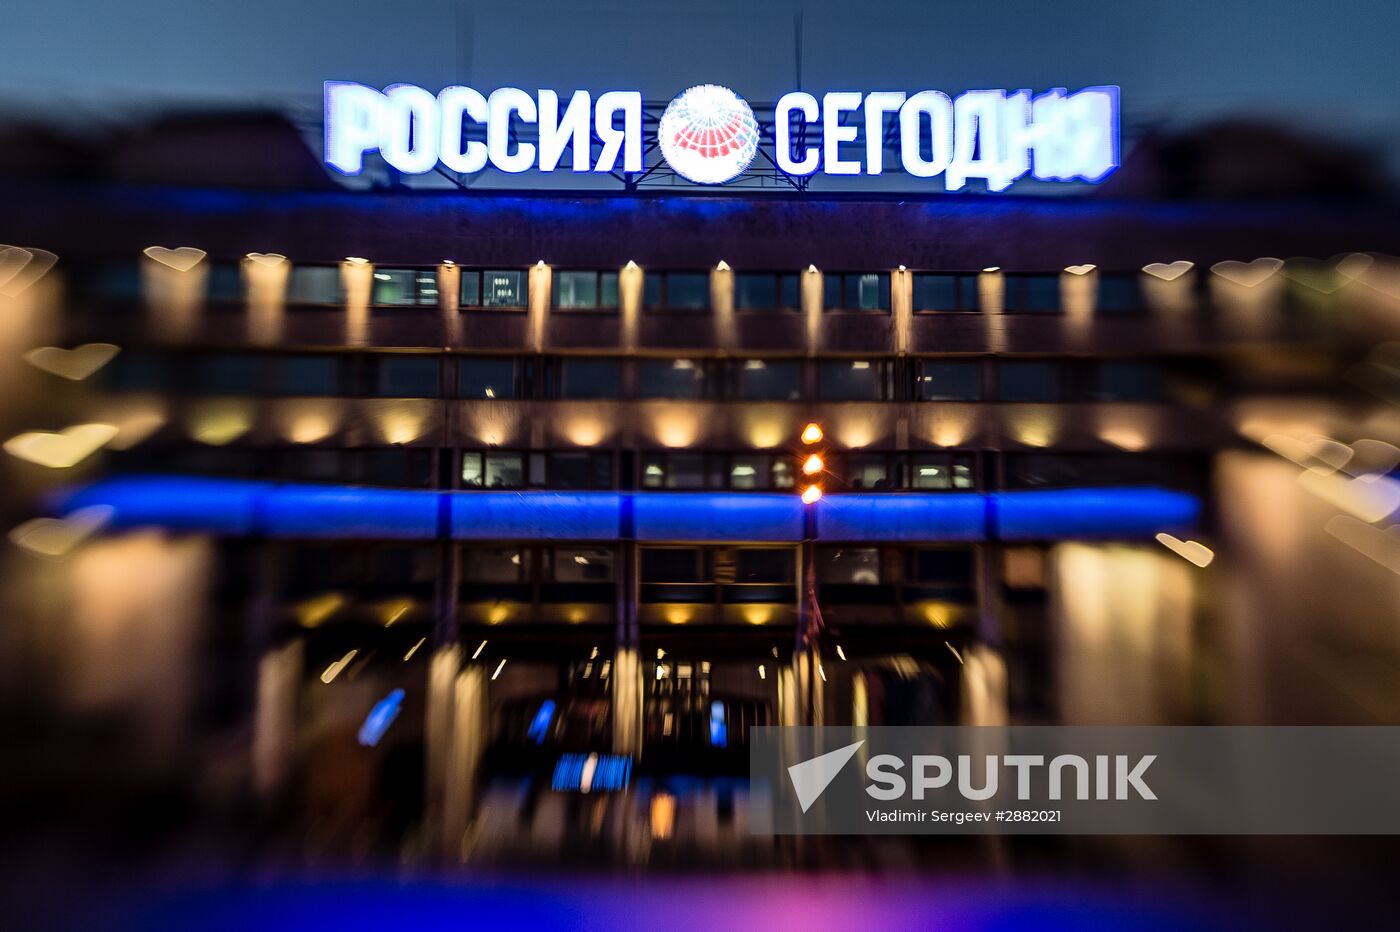 Rossiya Segodnya International Information Agency celebrates 75th anniversary